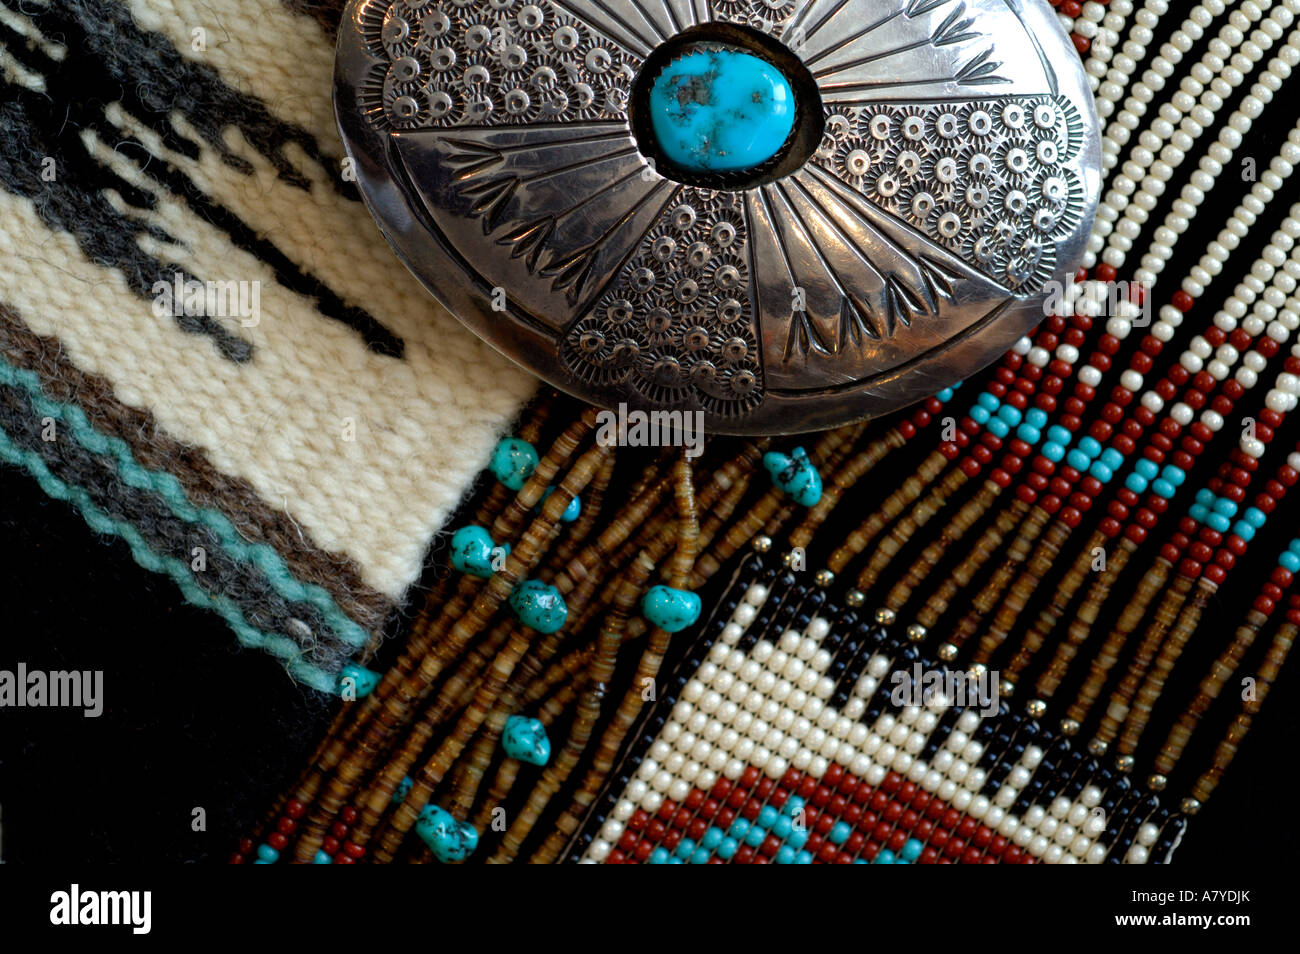 Au sud-ouest, American Indian Art & Artisanat. Artisanat Navajo : couverture, boucle, et cordons. Des biens. Banque D'Images